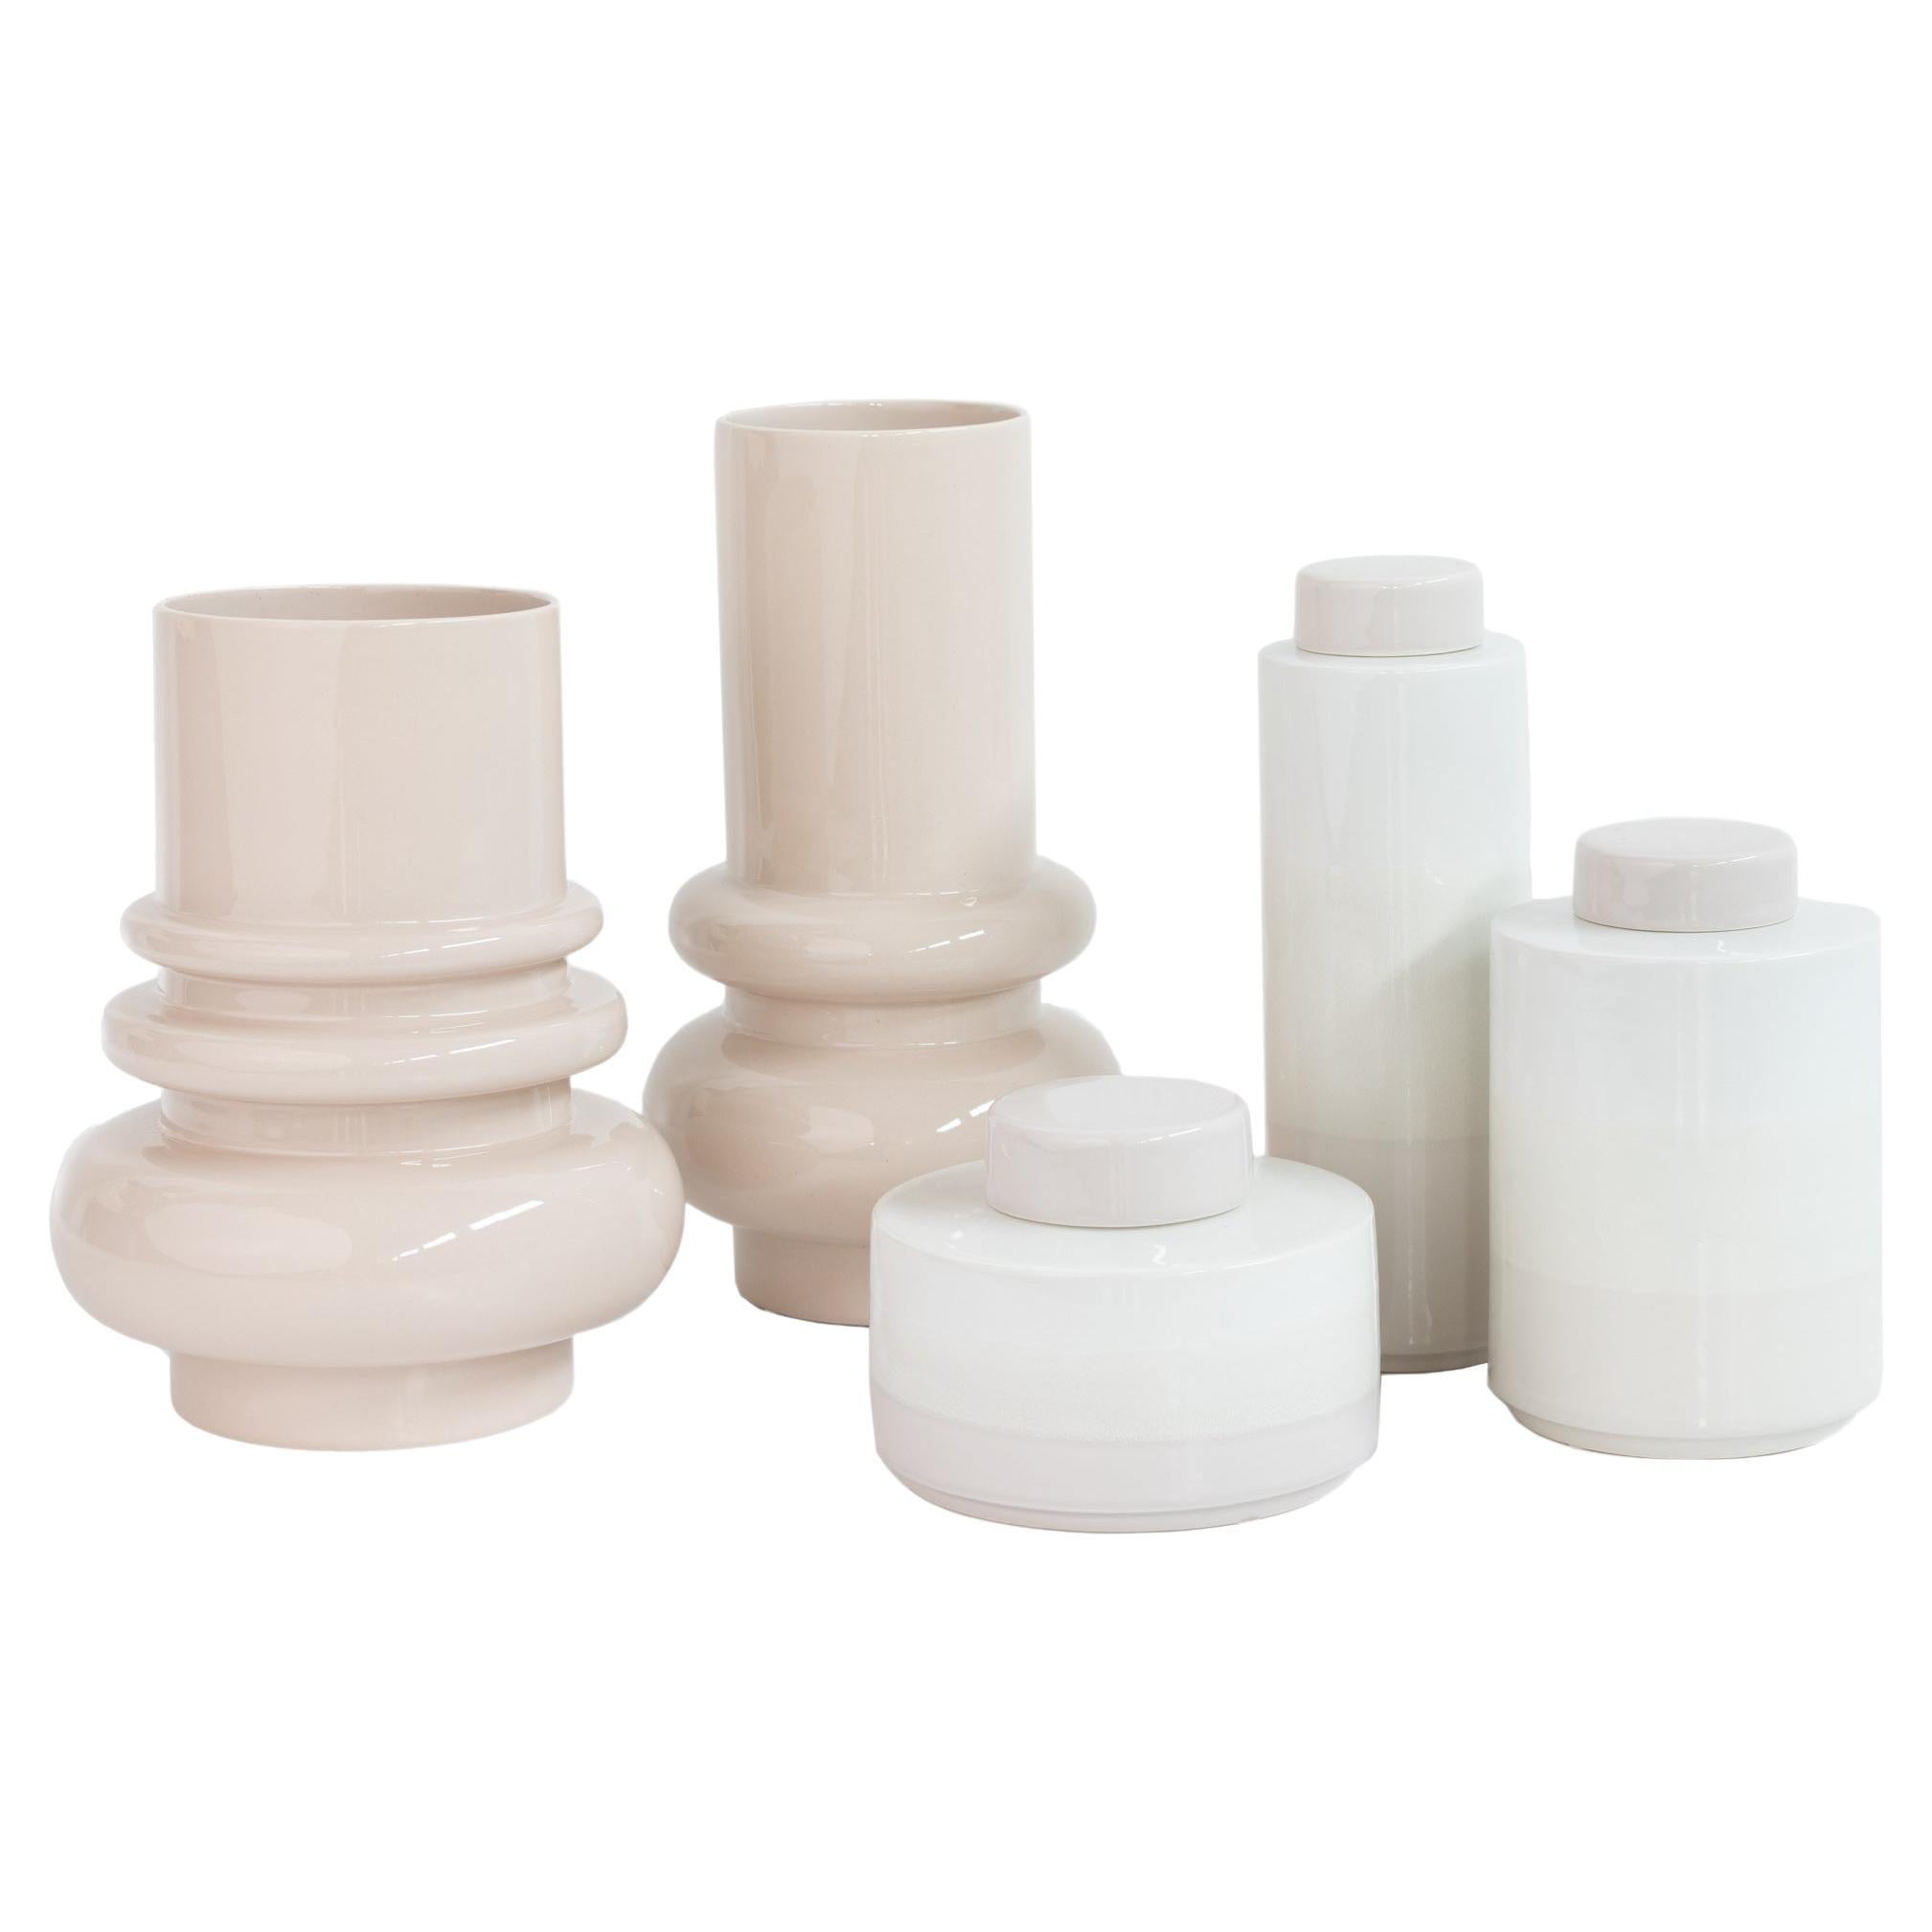 Set/5 Ceramic Pots & Vase, White & Cream, Handmade in Portugal by Lusitanus Home